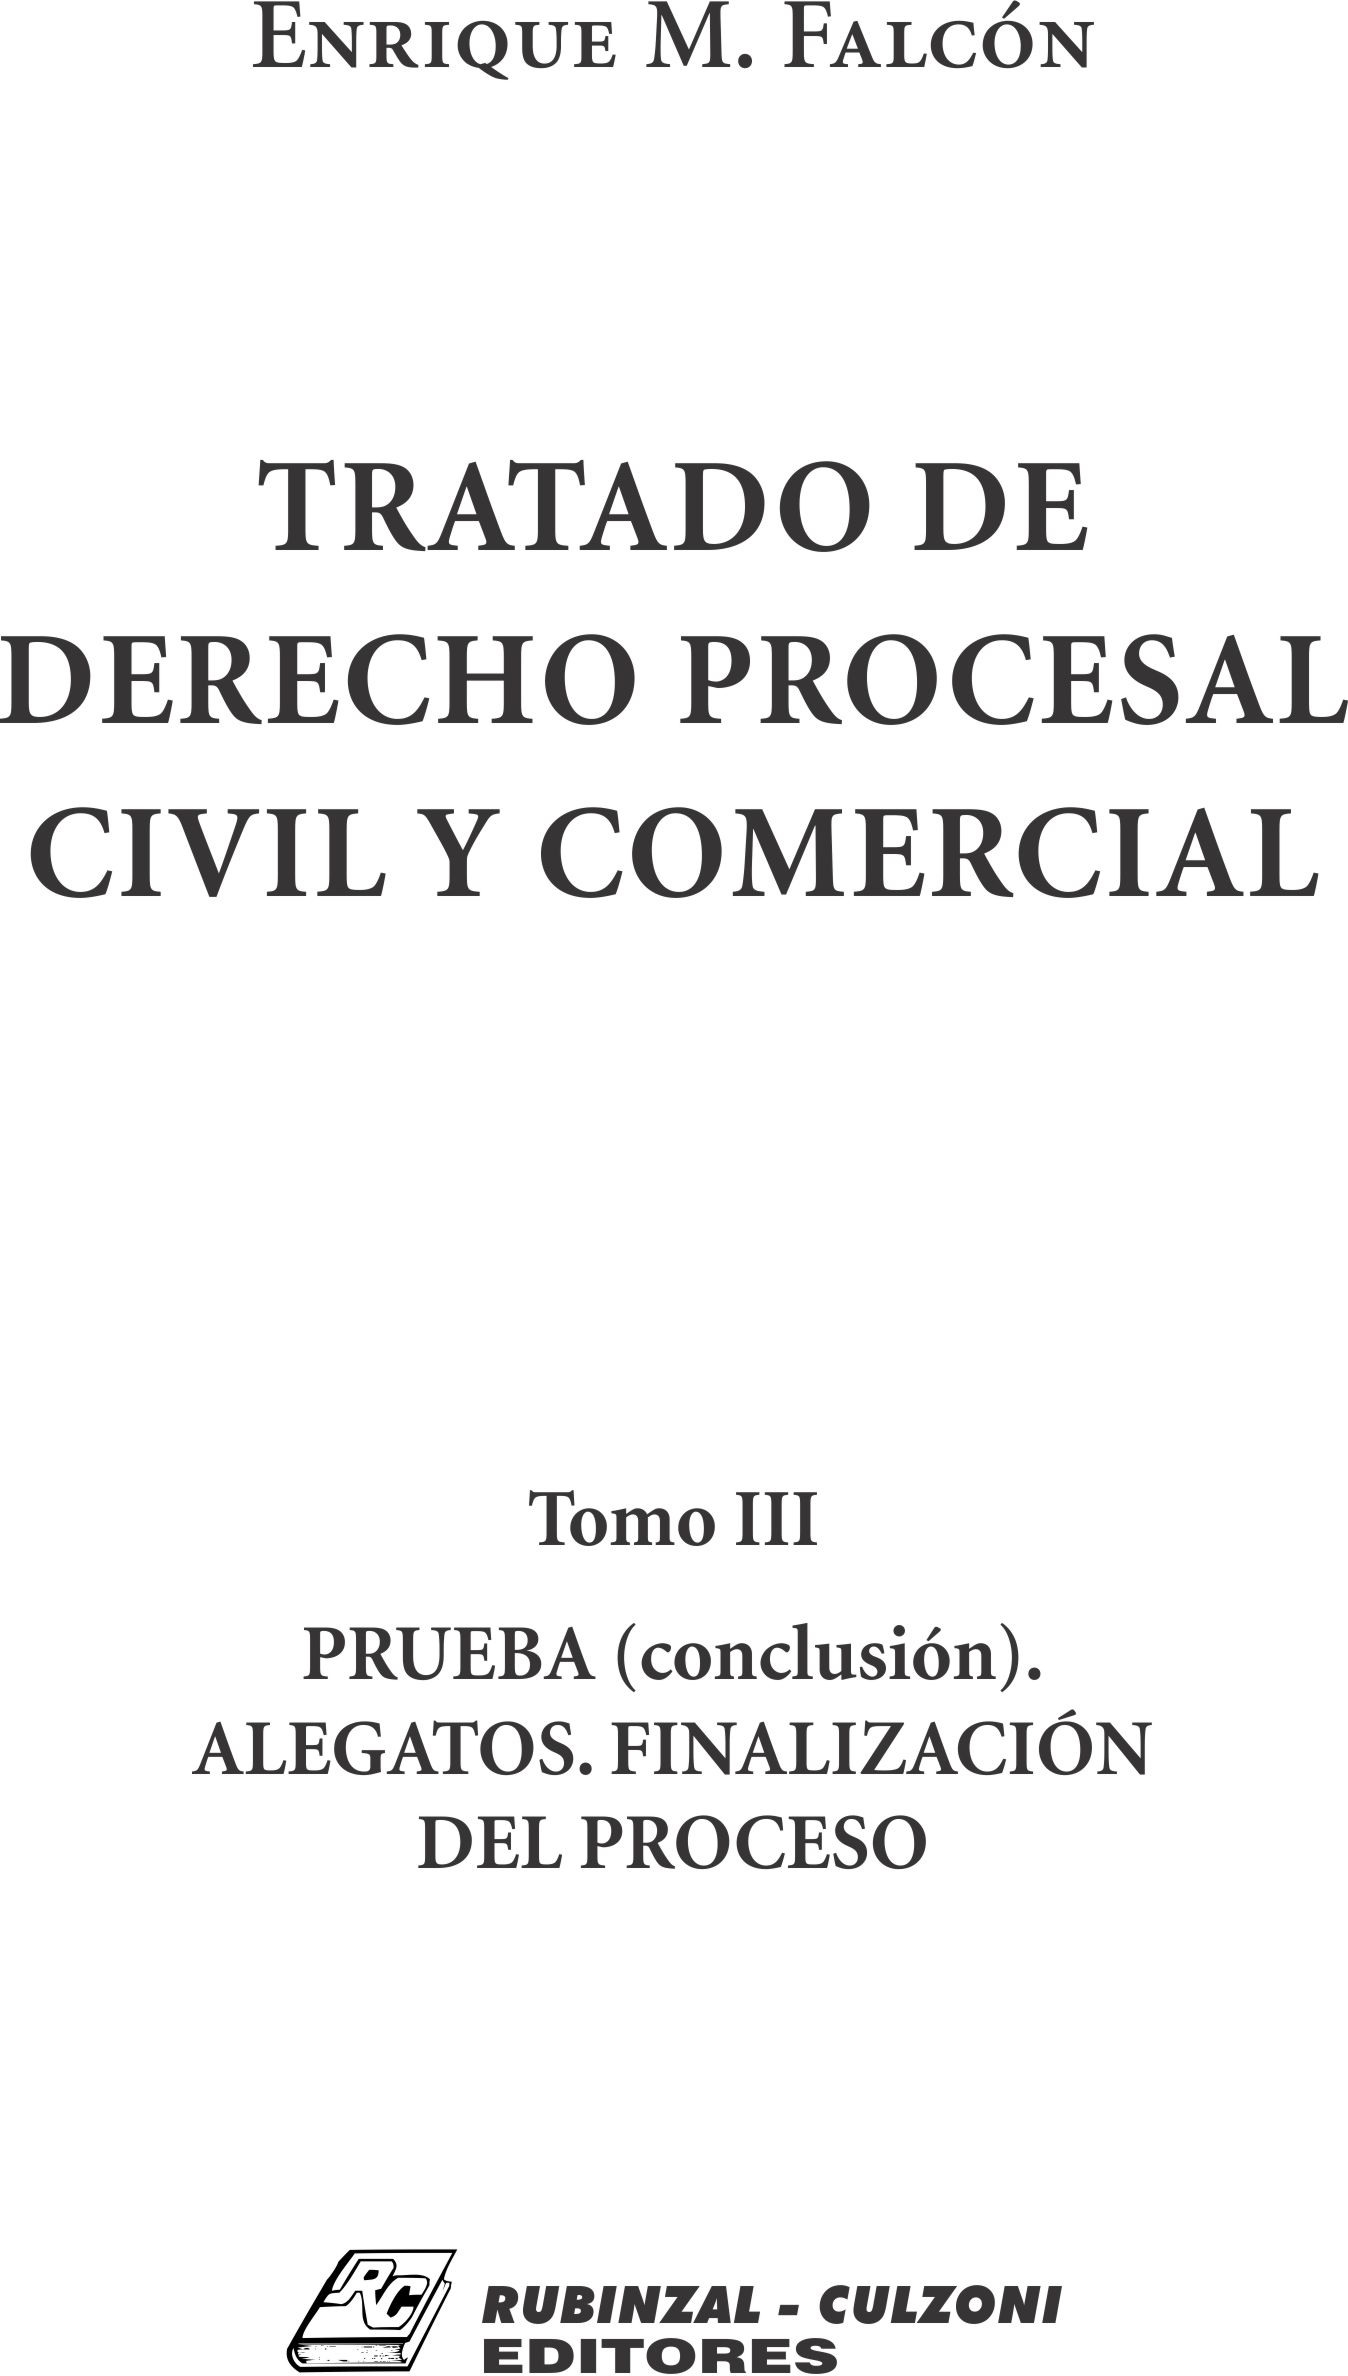 Tratado de Derecho Procesal Civil y Comercial